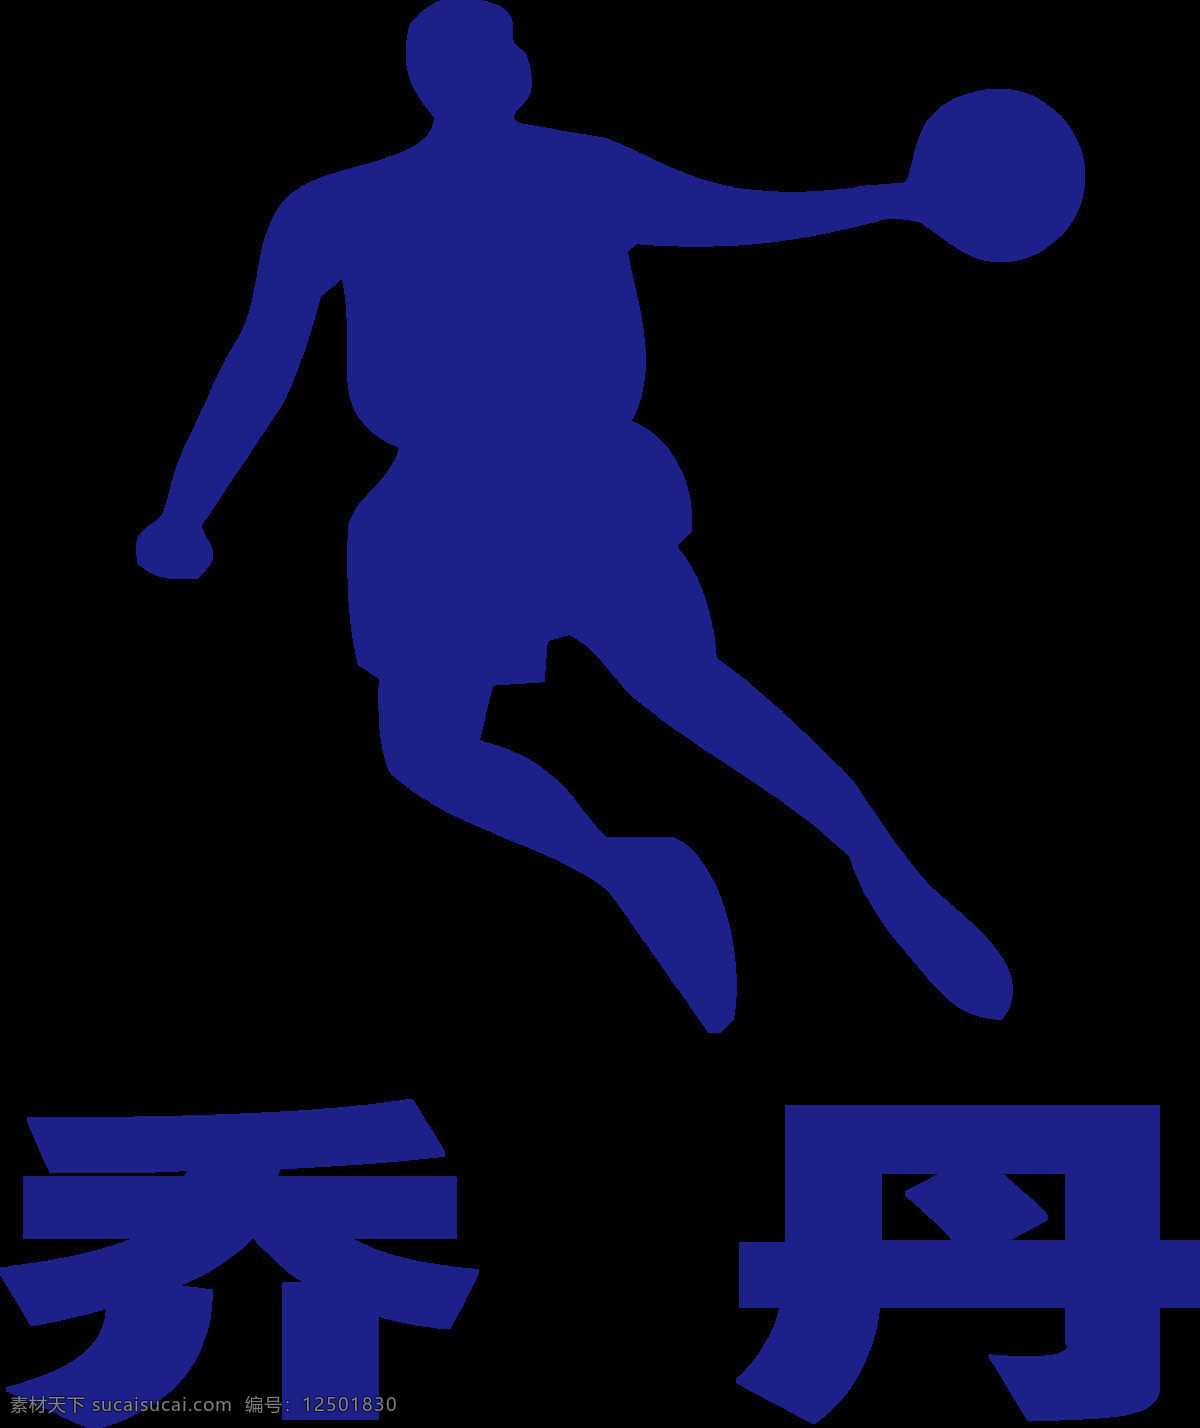 乔丹图片 乔丹标志 乔丹logo 乔丹体育 乔丹 乔丹服装 乔丹跑步鞋 乔丹运动服 企业logo 标志图标 企业 logo 标志